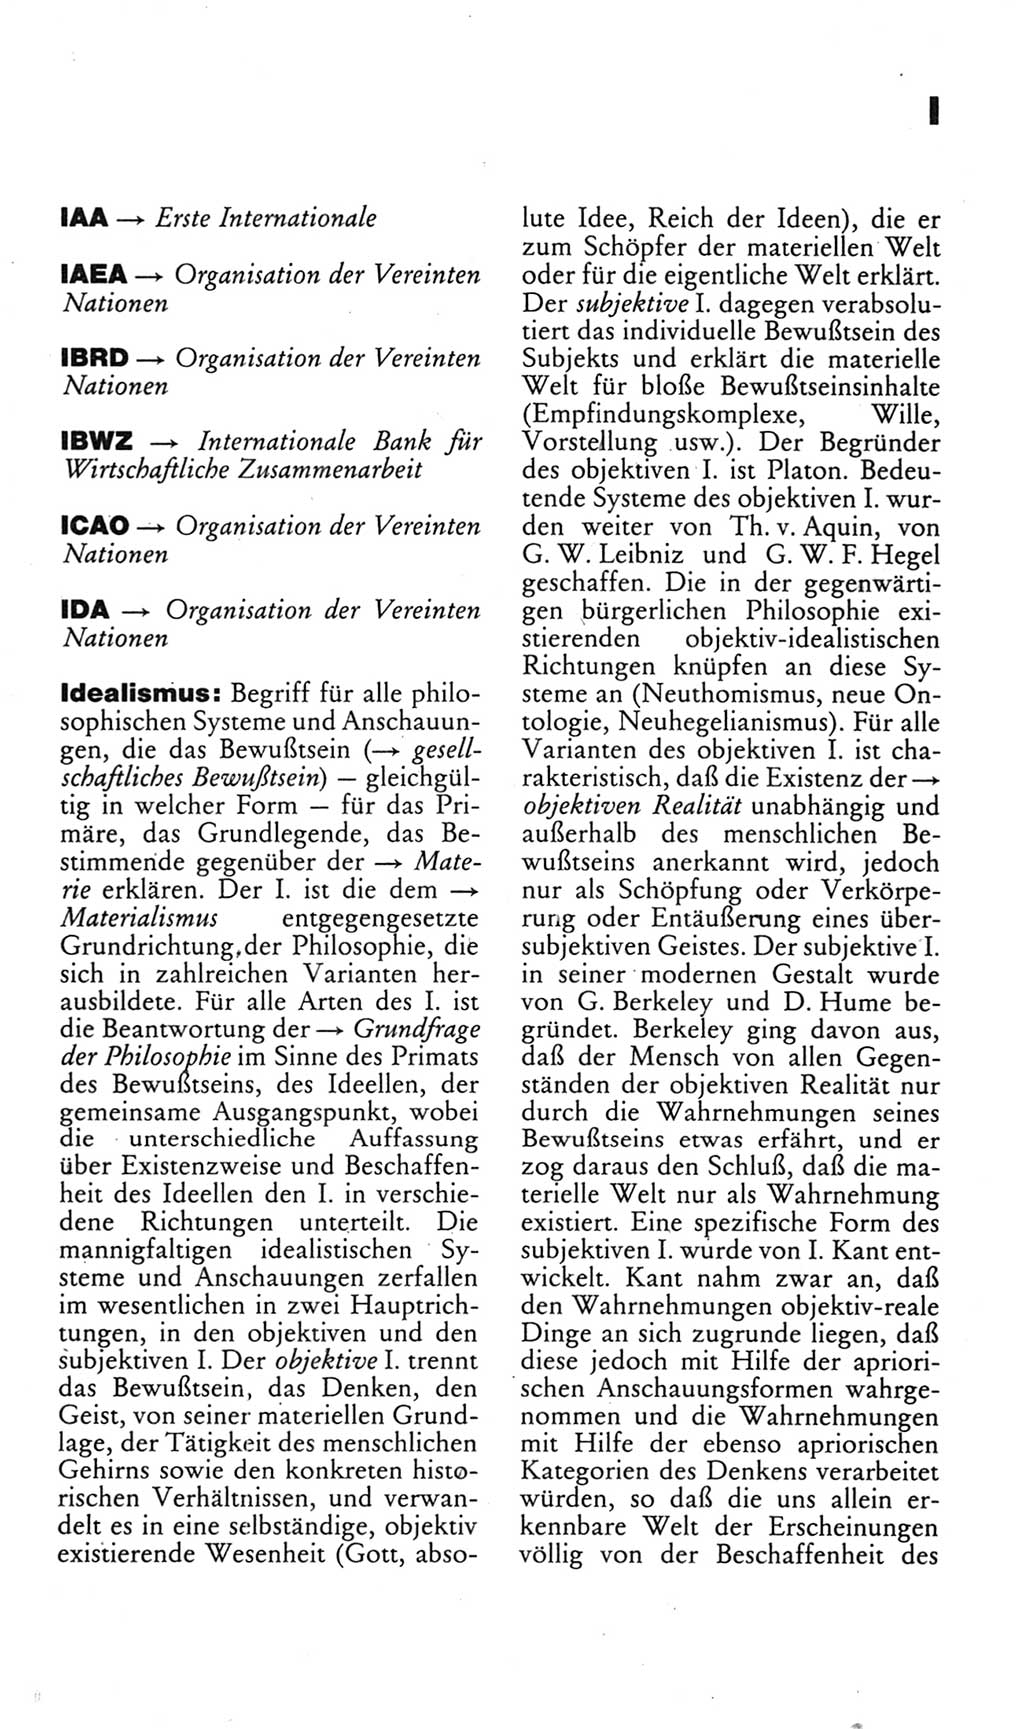 Kleines politisches Wörterbuch [Deutsche Demokratische Republik (DDR)] 1985, Seite 379 (Kl. pol. Wb. DDR 1985, S. 379)